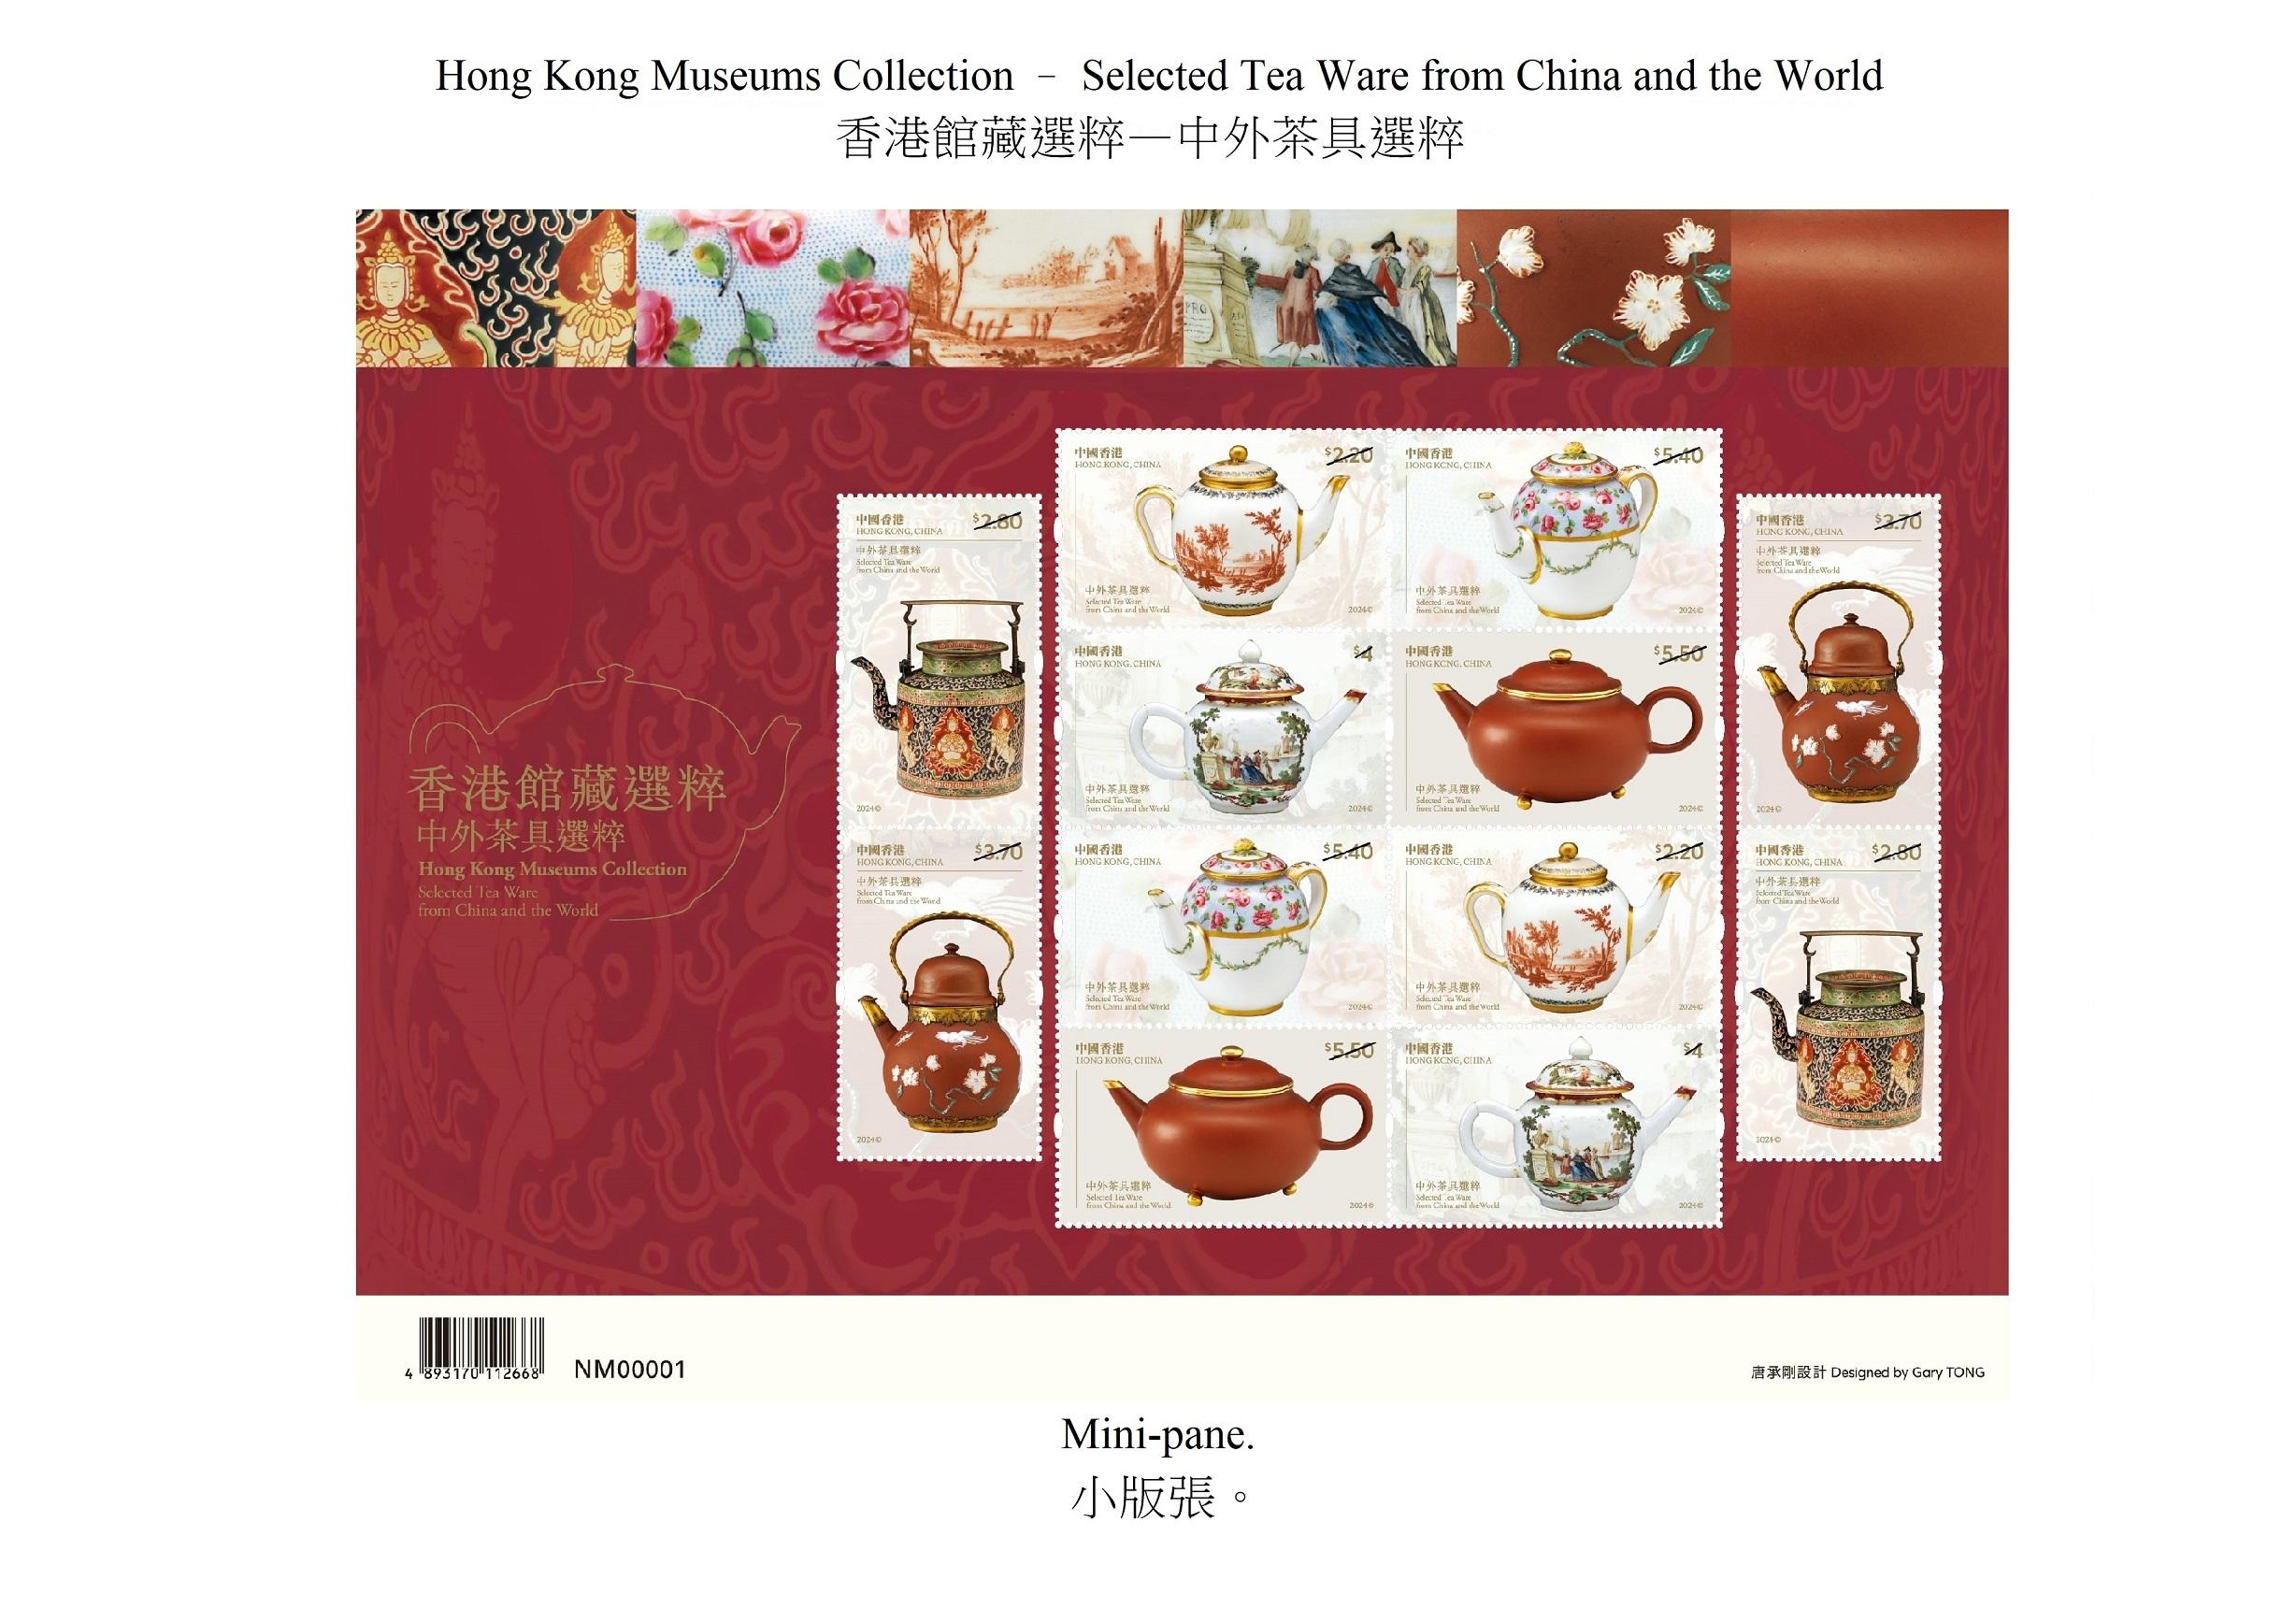 香港邮政四月十八日（星期四）发行以「香港馆藏选粹──中外茶具选粹」为题的特别邮票及相关集邮品。图示小版张。